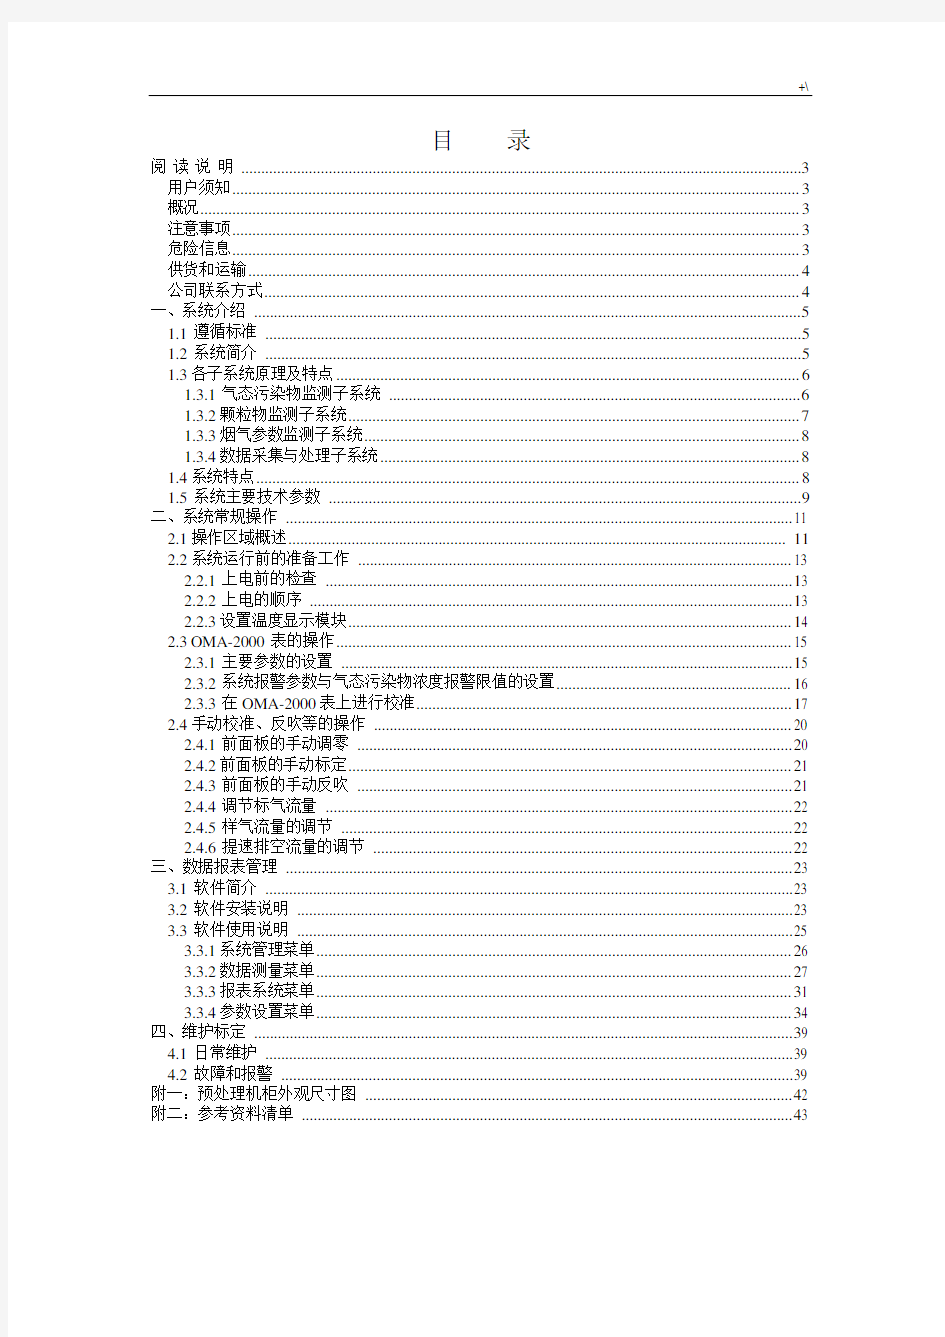 杭州聚光烟气在线监测系统CEMS-2000说明书